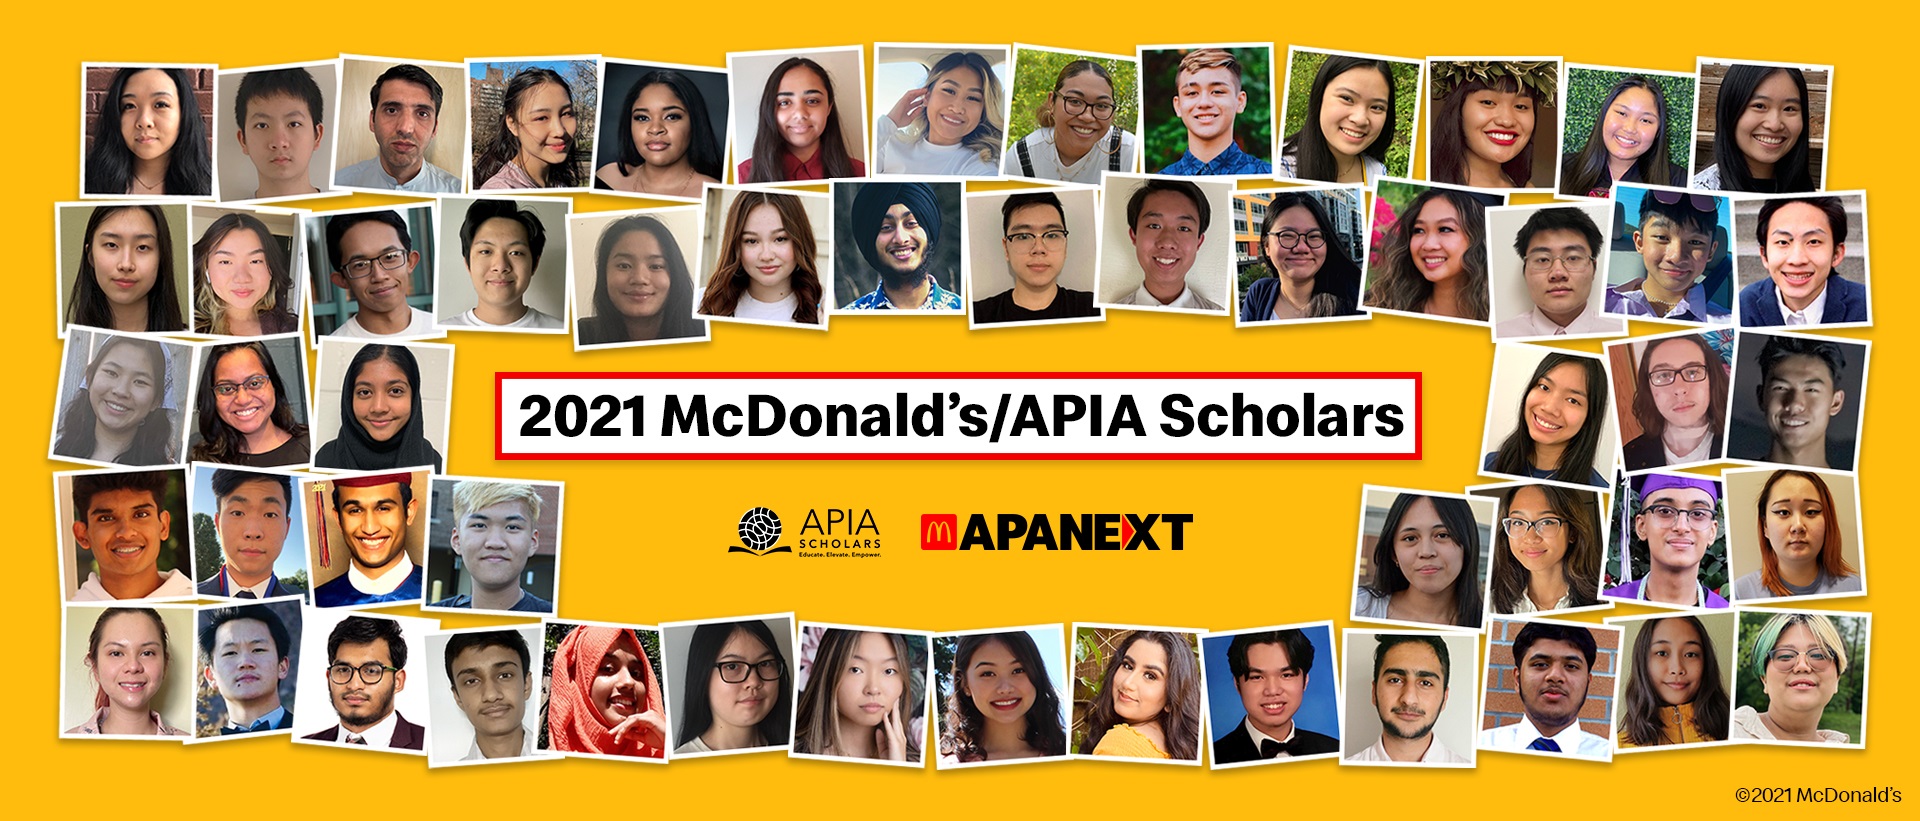 美国麦当劳通过APIA奖学金 协助弱势亚洲太平洋岛民学生解决财务困难 55位APIA学生将获颁总额50万美元的奖学金 让他们在求学之路上继续迈进